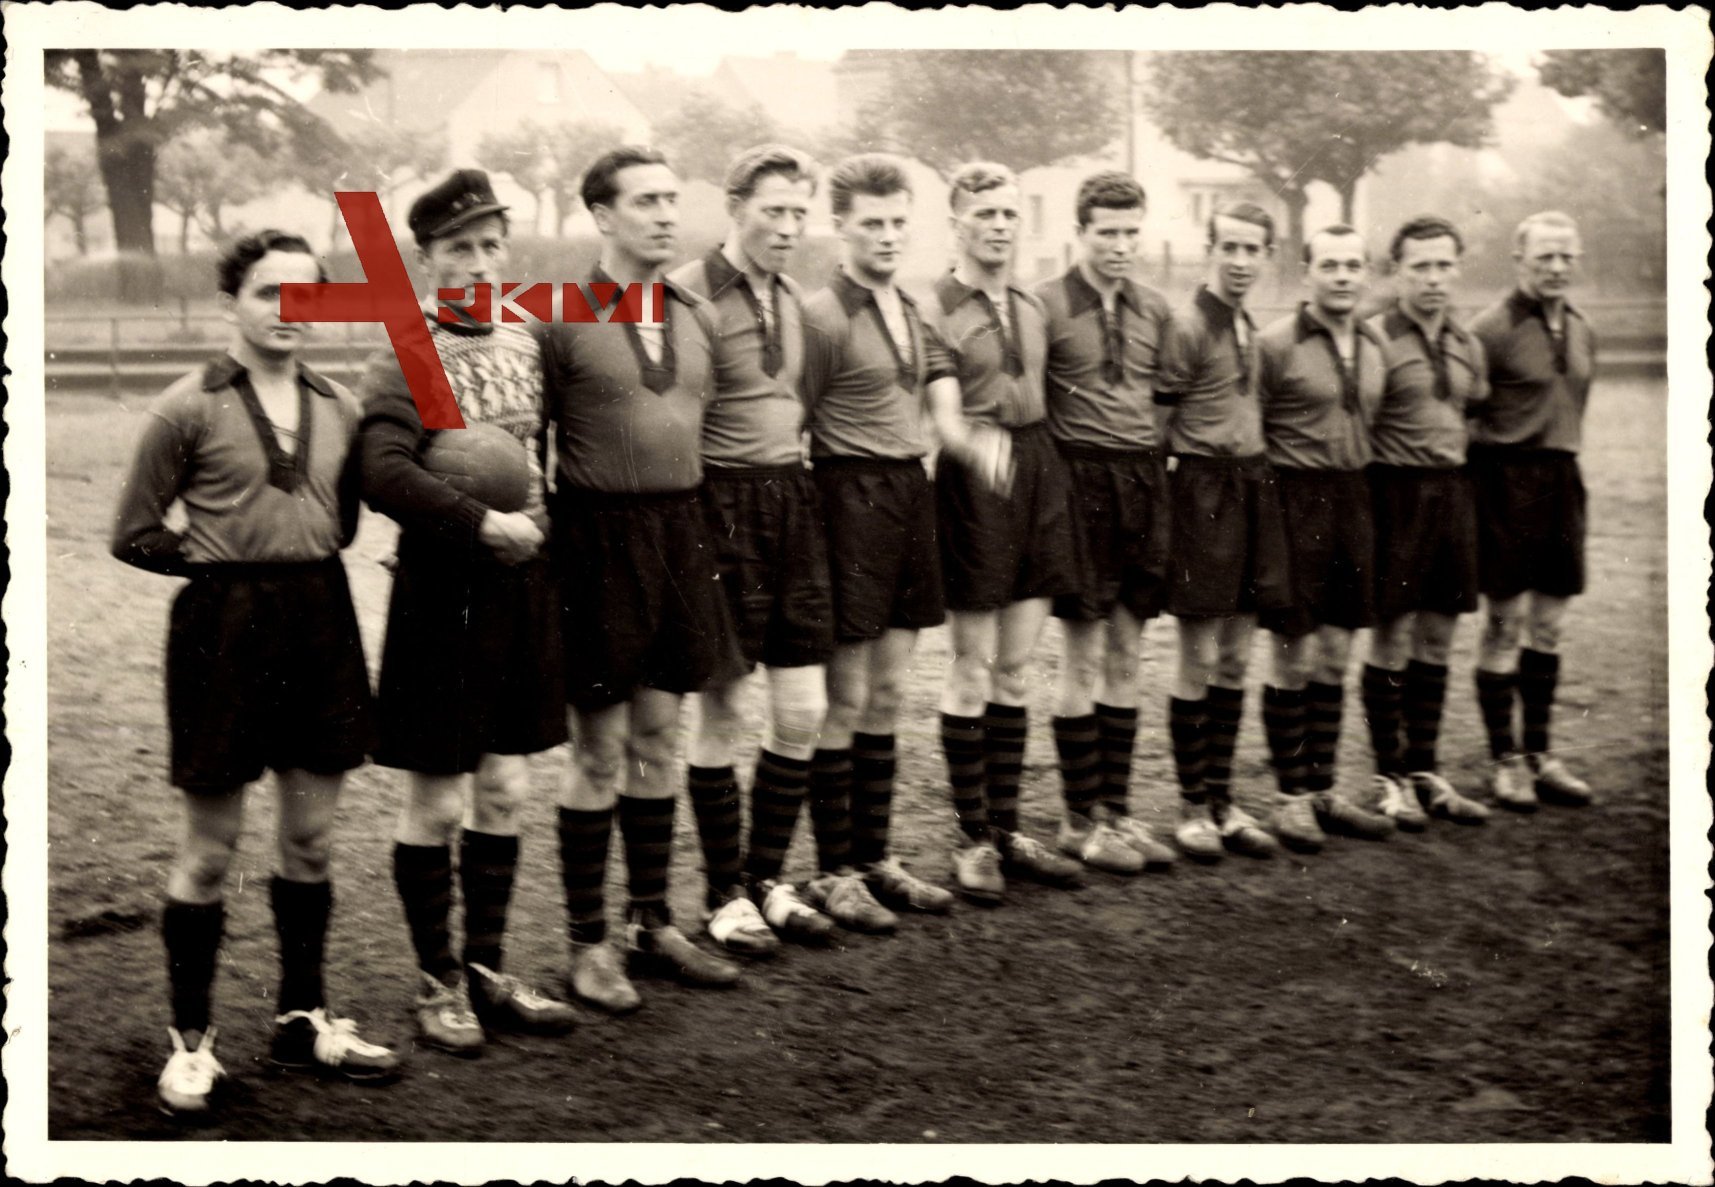 Gruppenfoto einer Fußballmannschaft, Trikots, Sporthosen